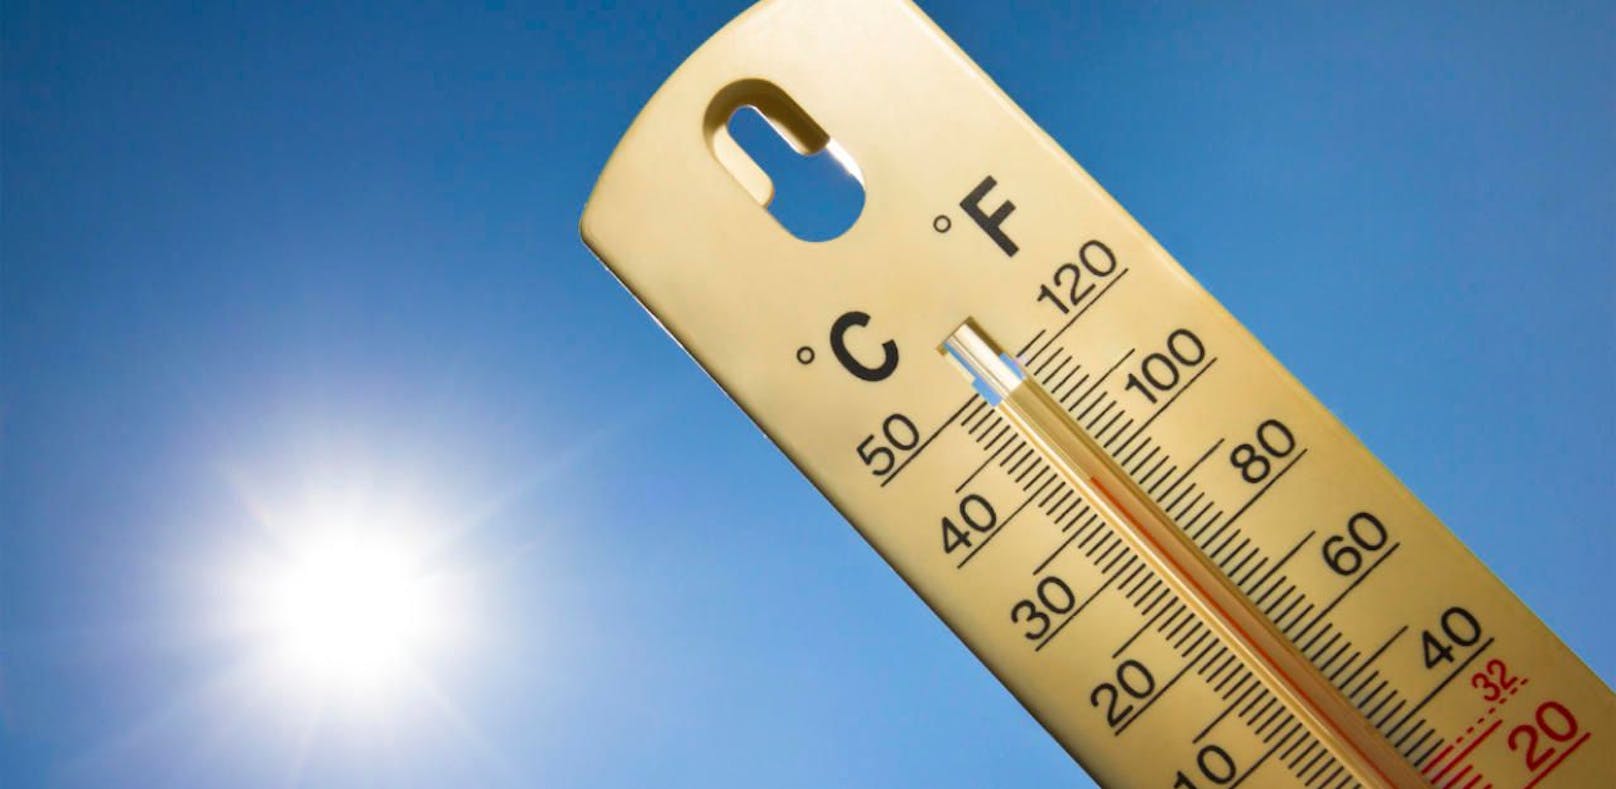 Heißester Tag des Jahres: 38 Grad in Haag